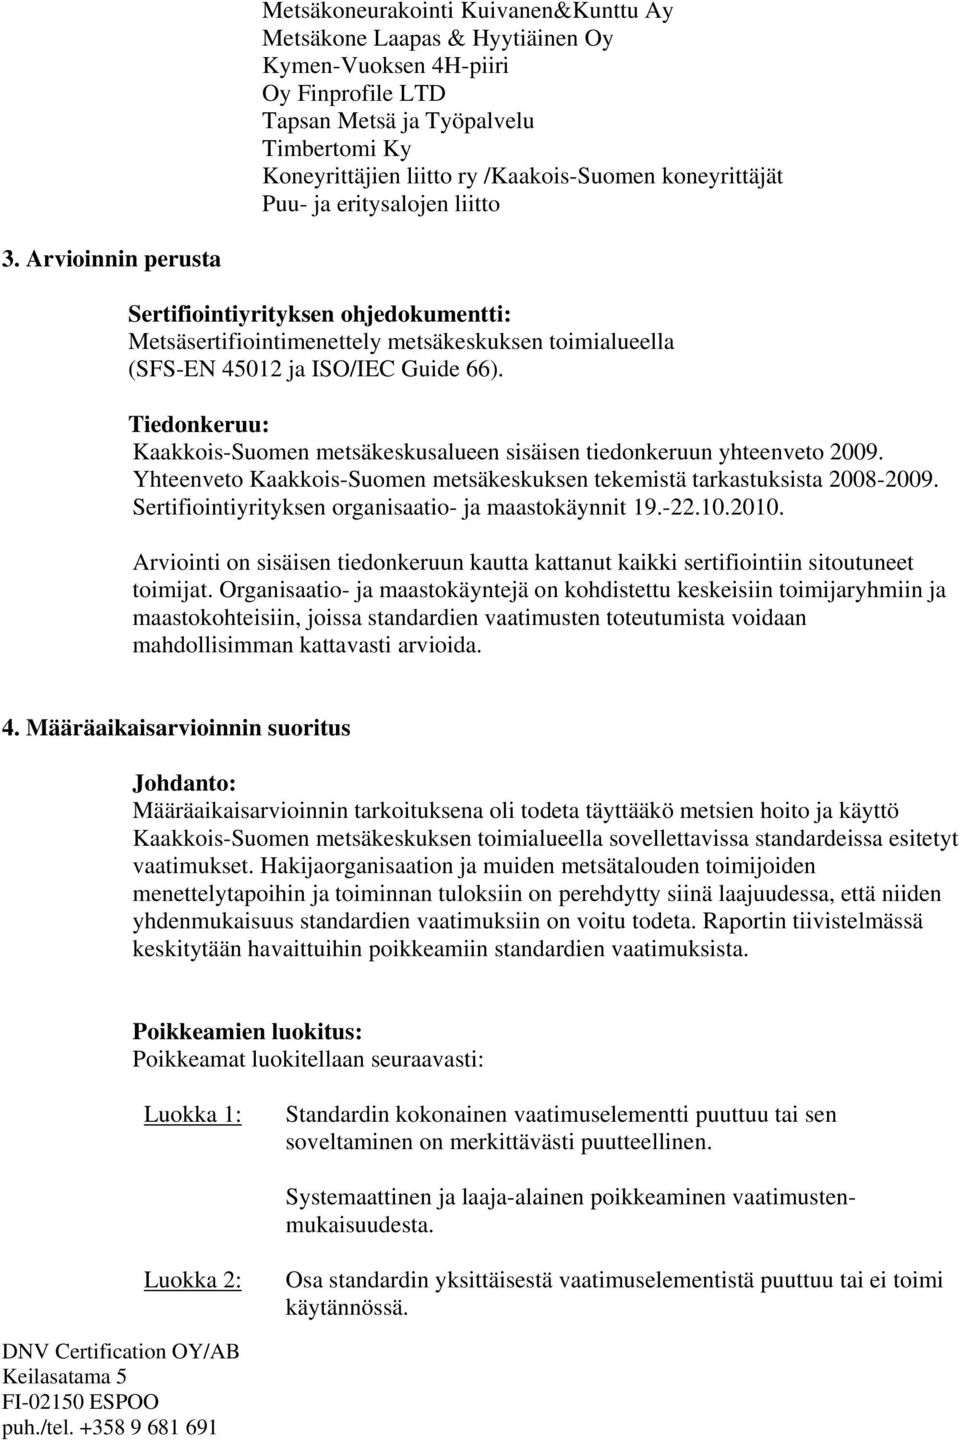 Tiedonkeruu: Kaakkois-Suomen metsäkeskusalueen sisäisen tiedonkeruun yhteenveto 2009. Yhteenveto Kaakkois-Suomen metsäkeskuksen tekemistä tarkastuksista 2008-2009.